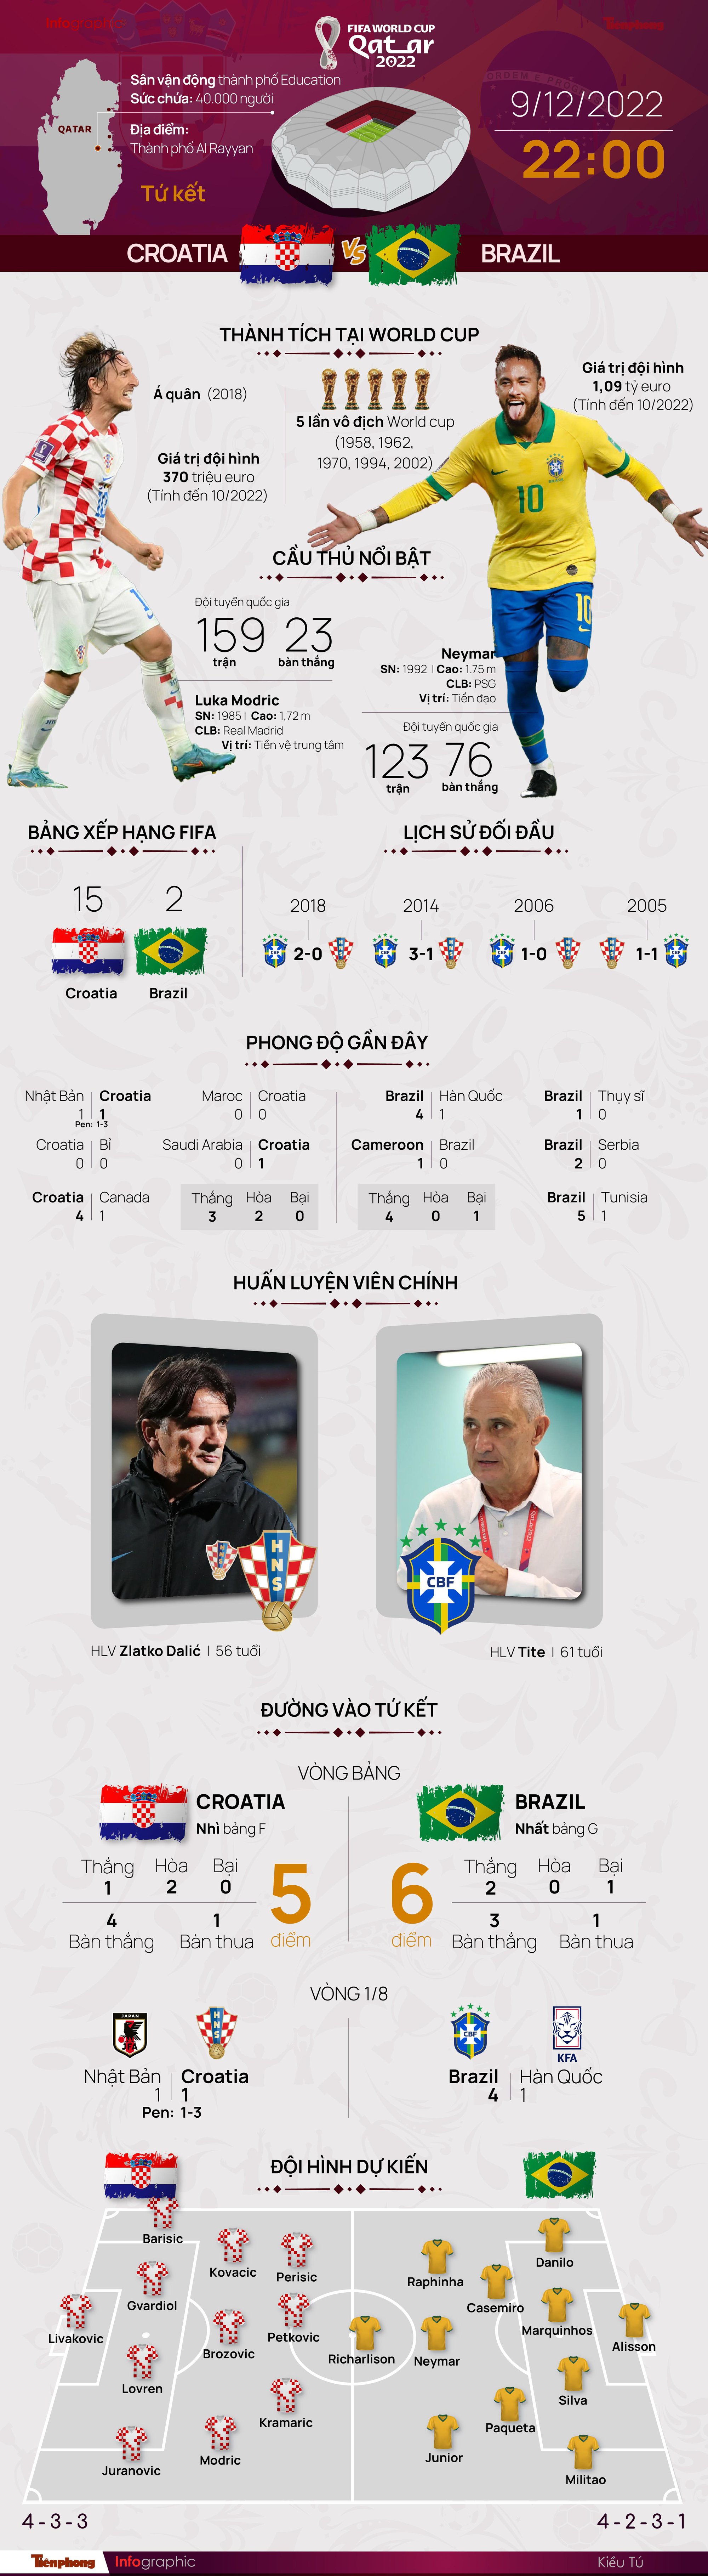 Tứ kết World Cup 2022: Tương quan trước trận Croatia - Brazil, 22 giờ 9/12 - Ảnh 1.